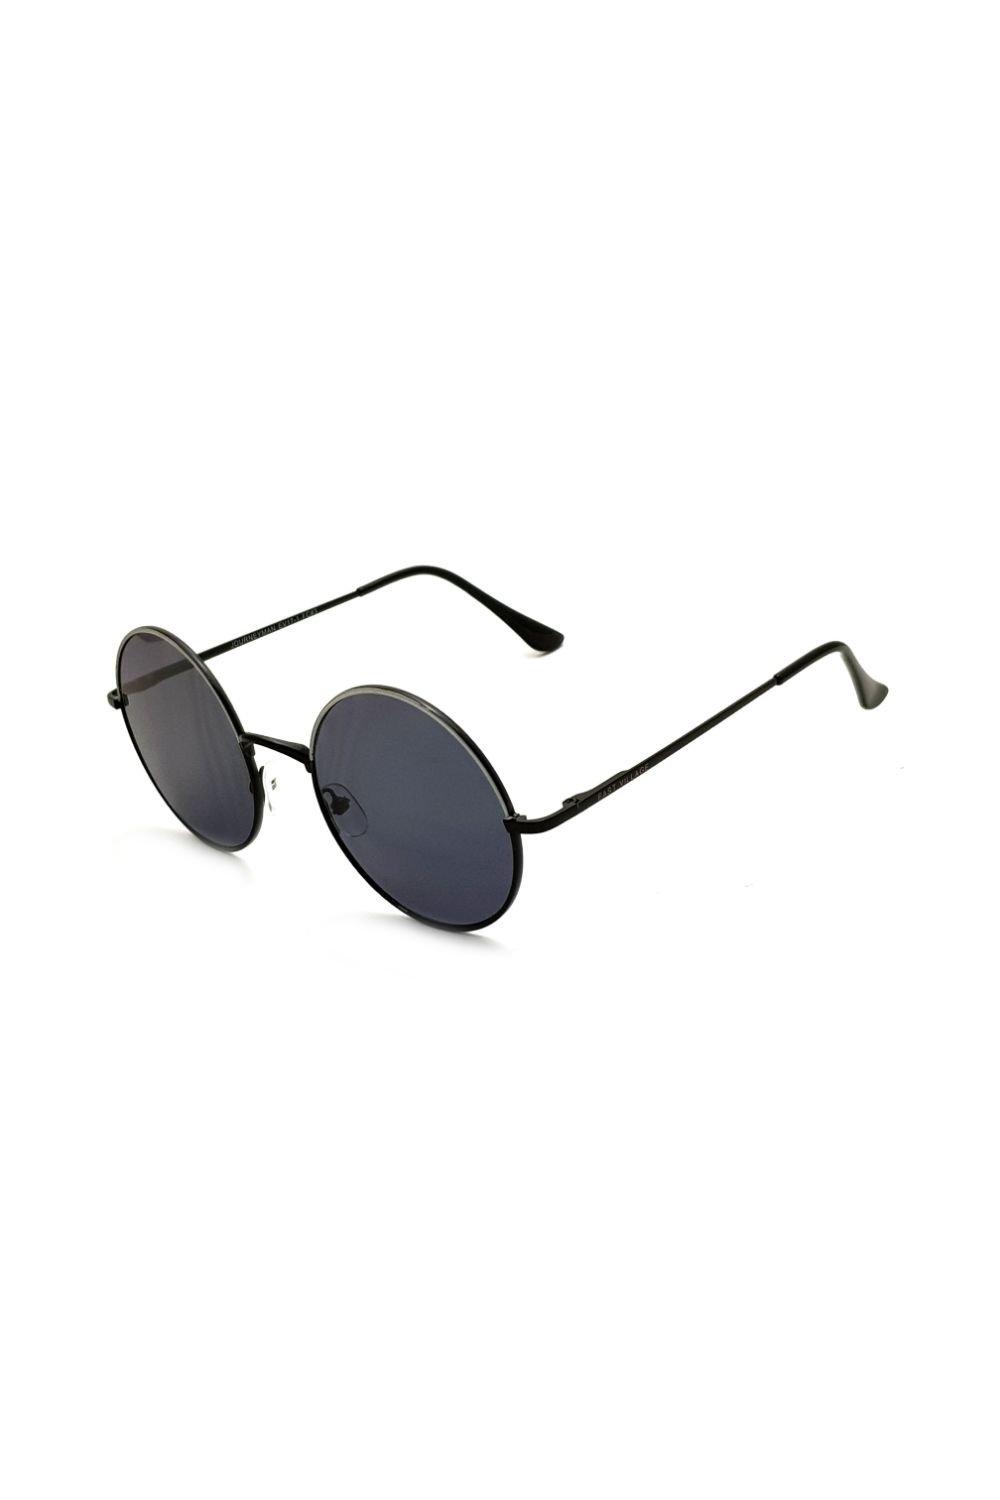 солнцезащитные очки авиаторы jordan east village черный Круглые солнцезащитные очки Journeyman East Village, черный